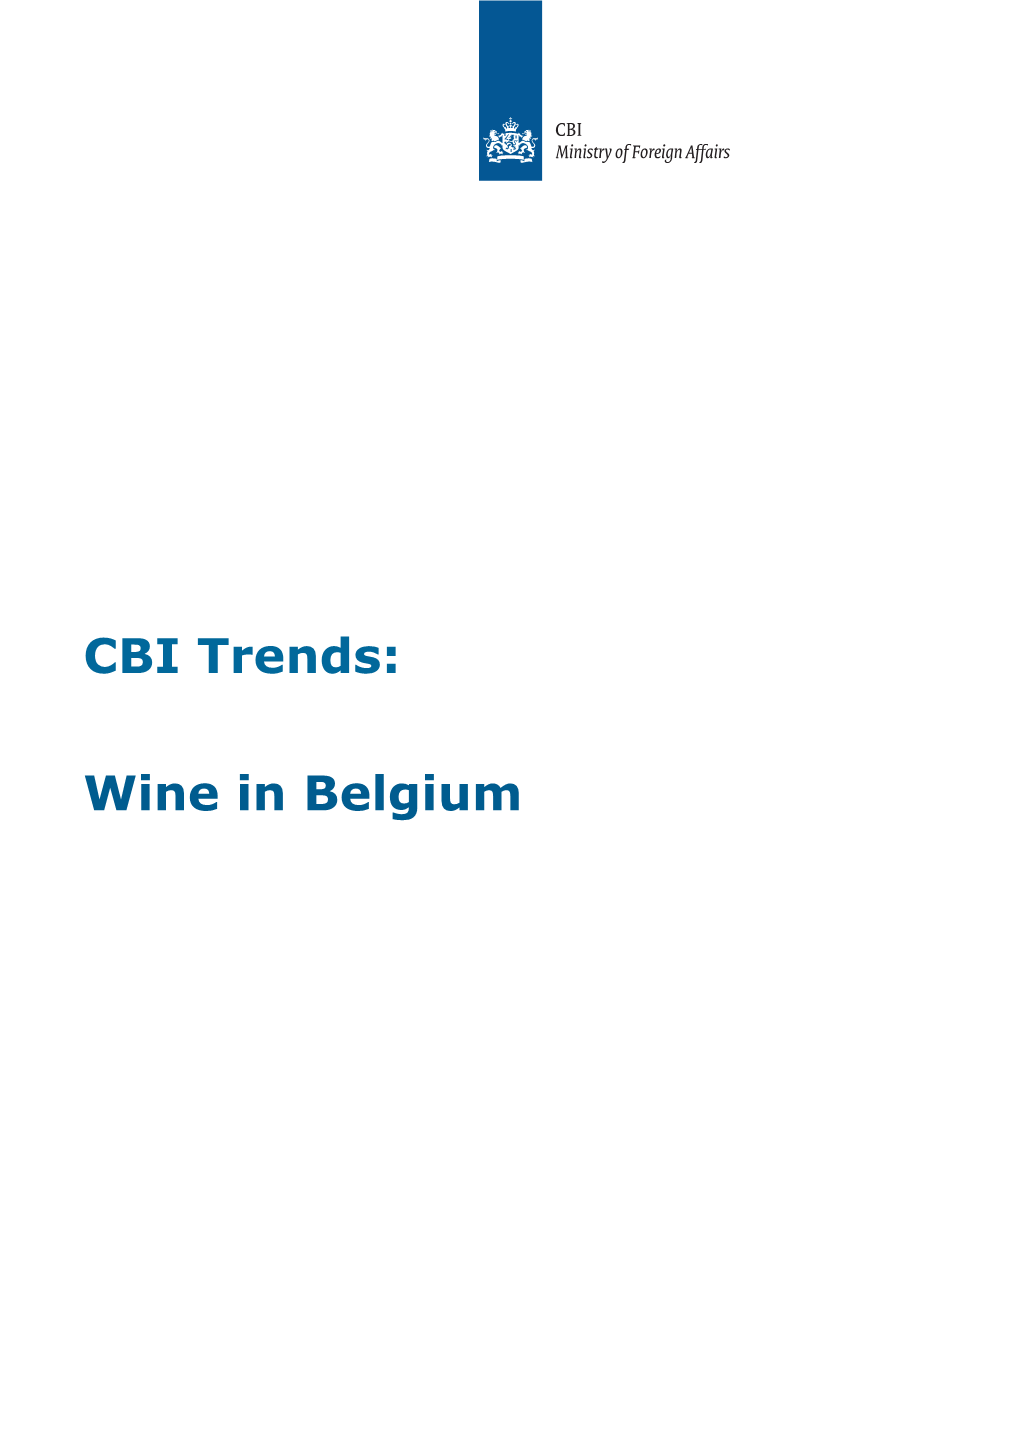 Wine in Belgium